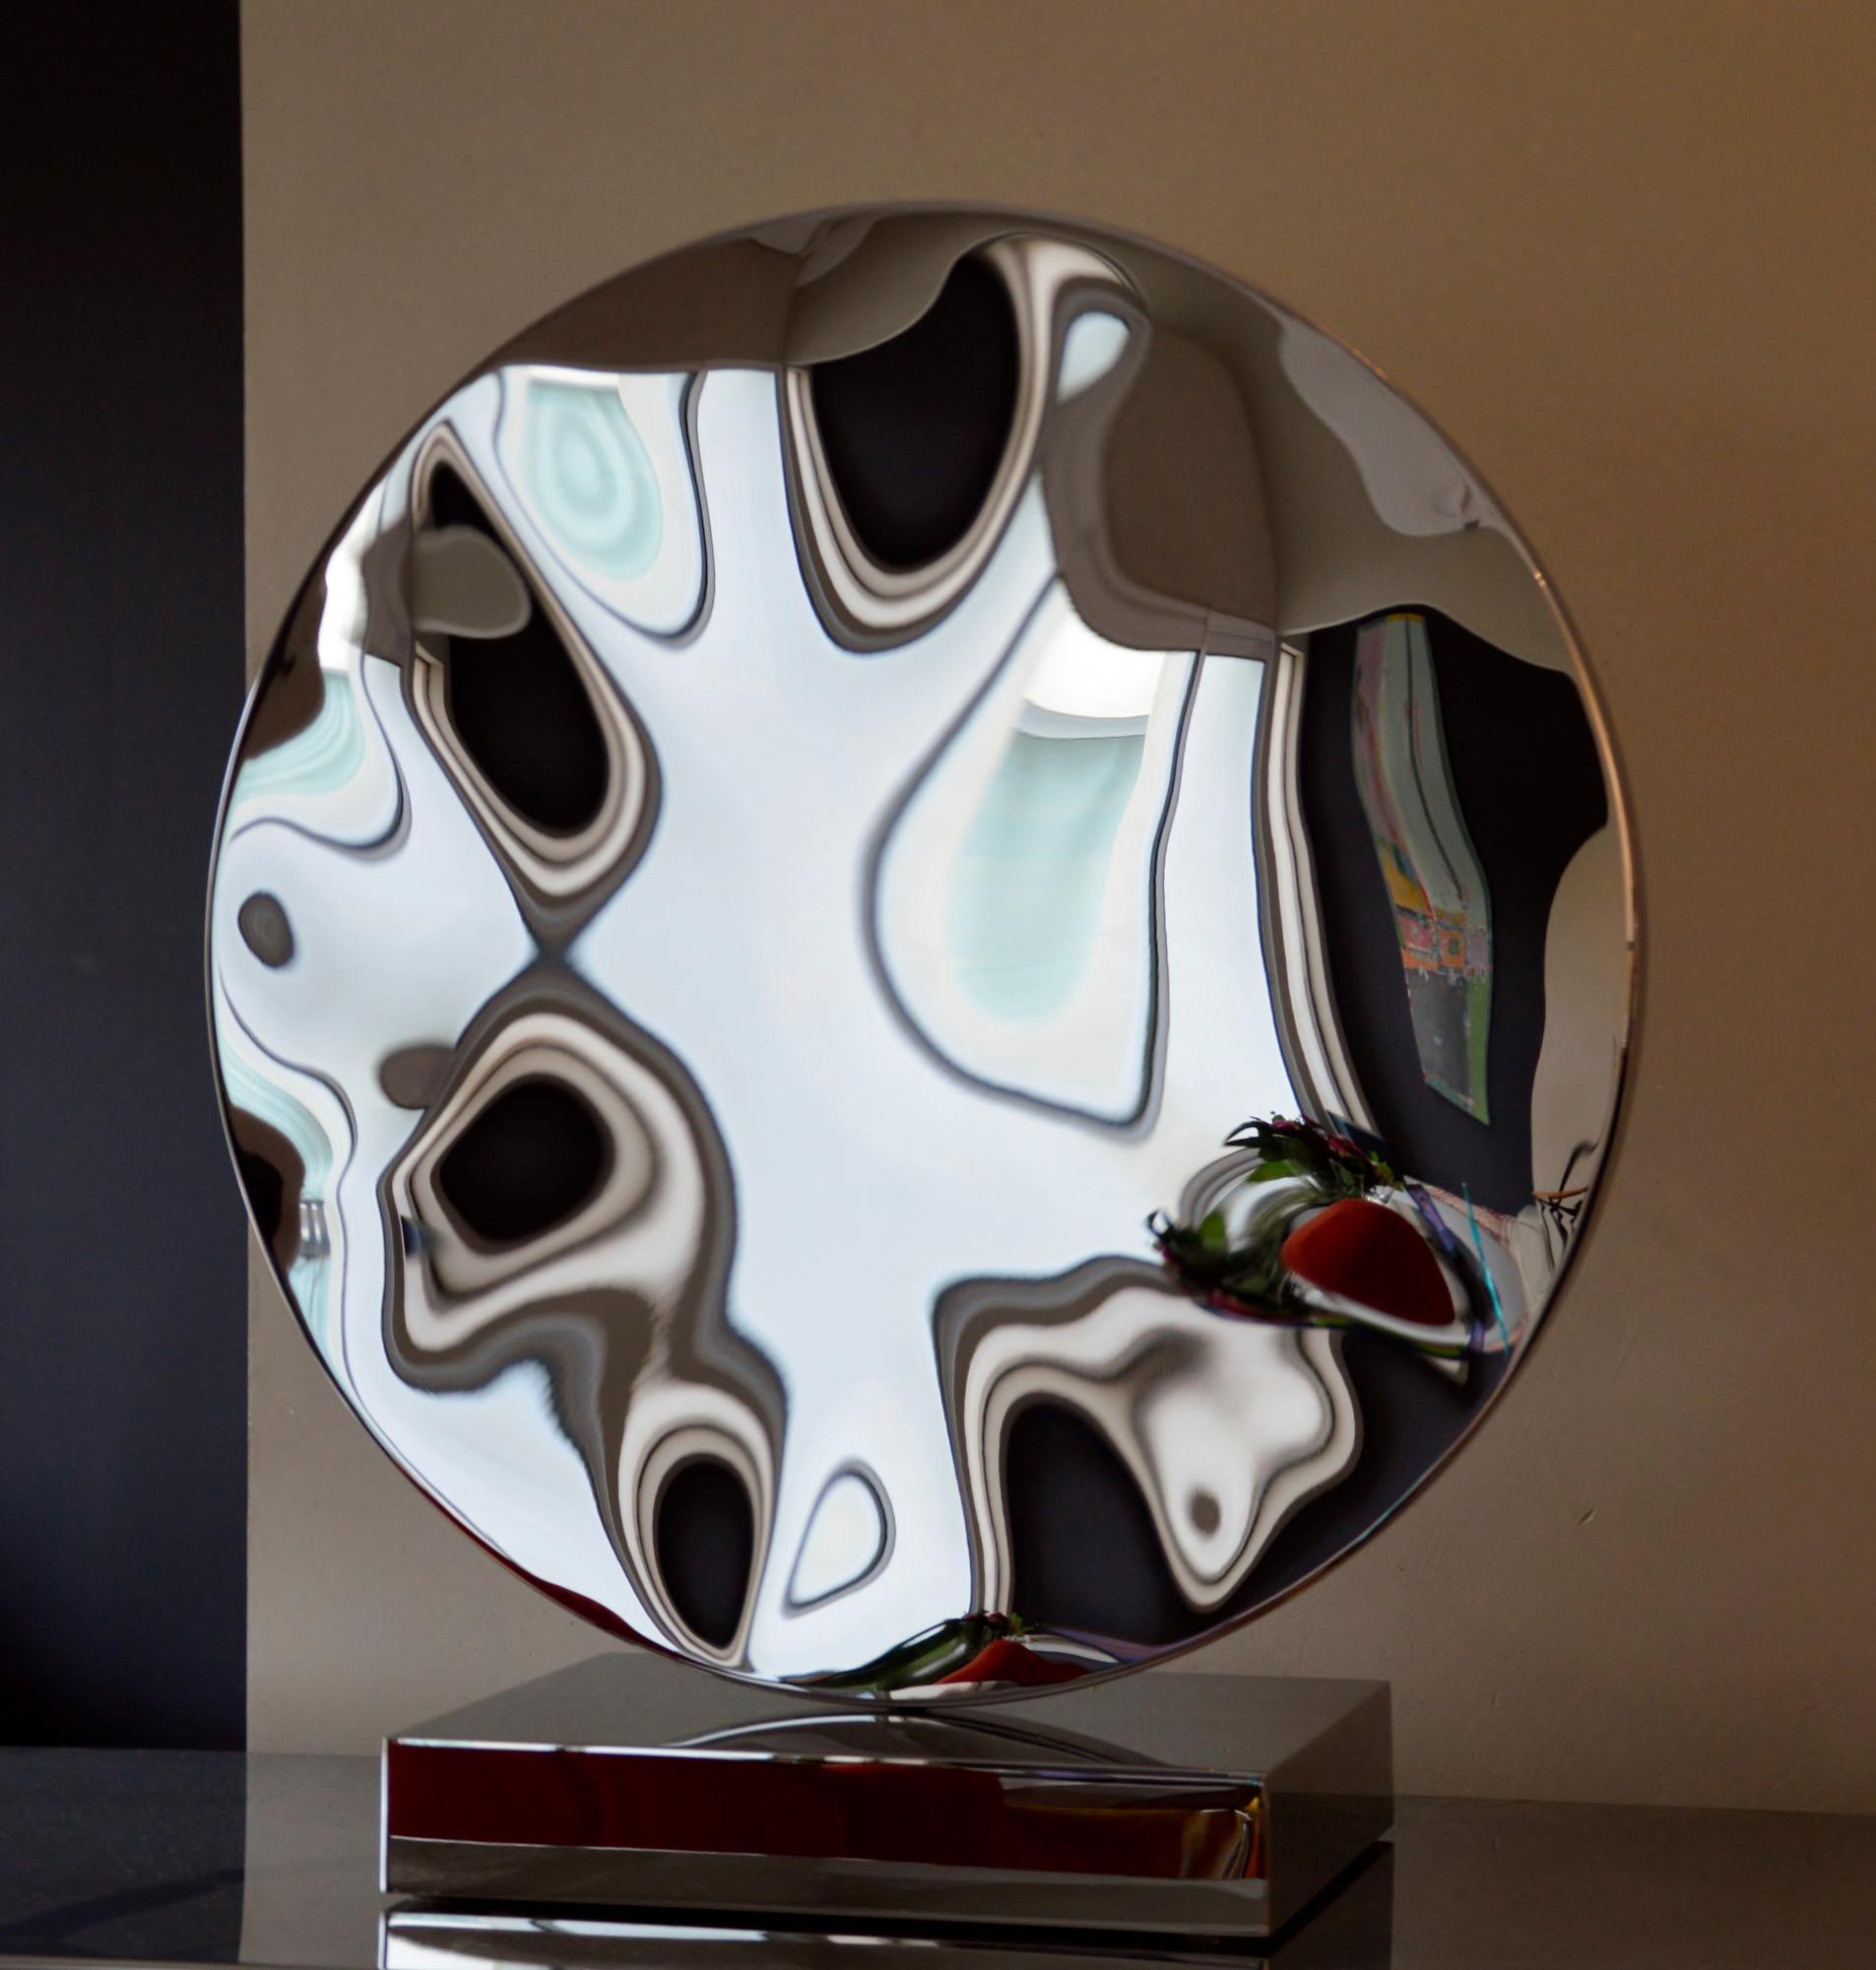 "Shattered" mirror I est une sculpture et un socle uniques en acier inoxydable poli miroir de l'artiste contemporain Franck K, dont les dimensions sont de 69,5 × 63 × 23 cm (27,4 × 24,8 × 9,1 in). 
La sculpture est signée et accompagnée d'un